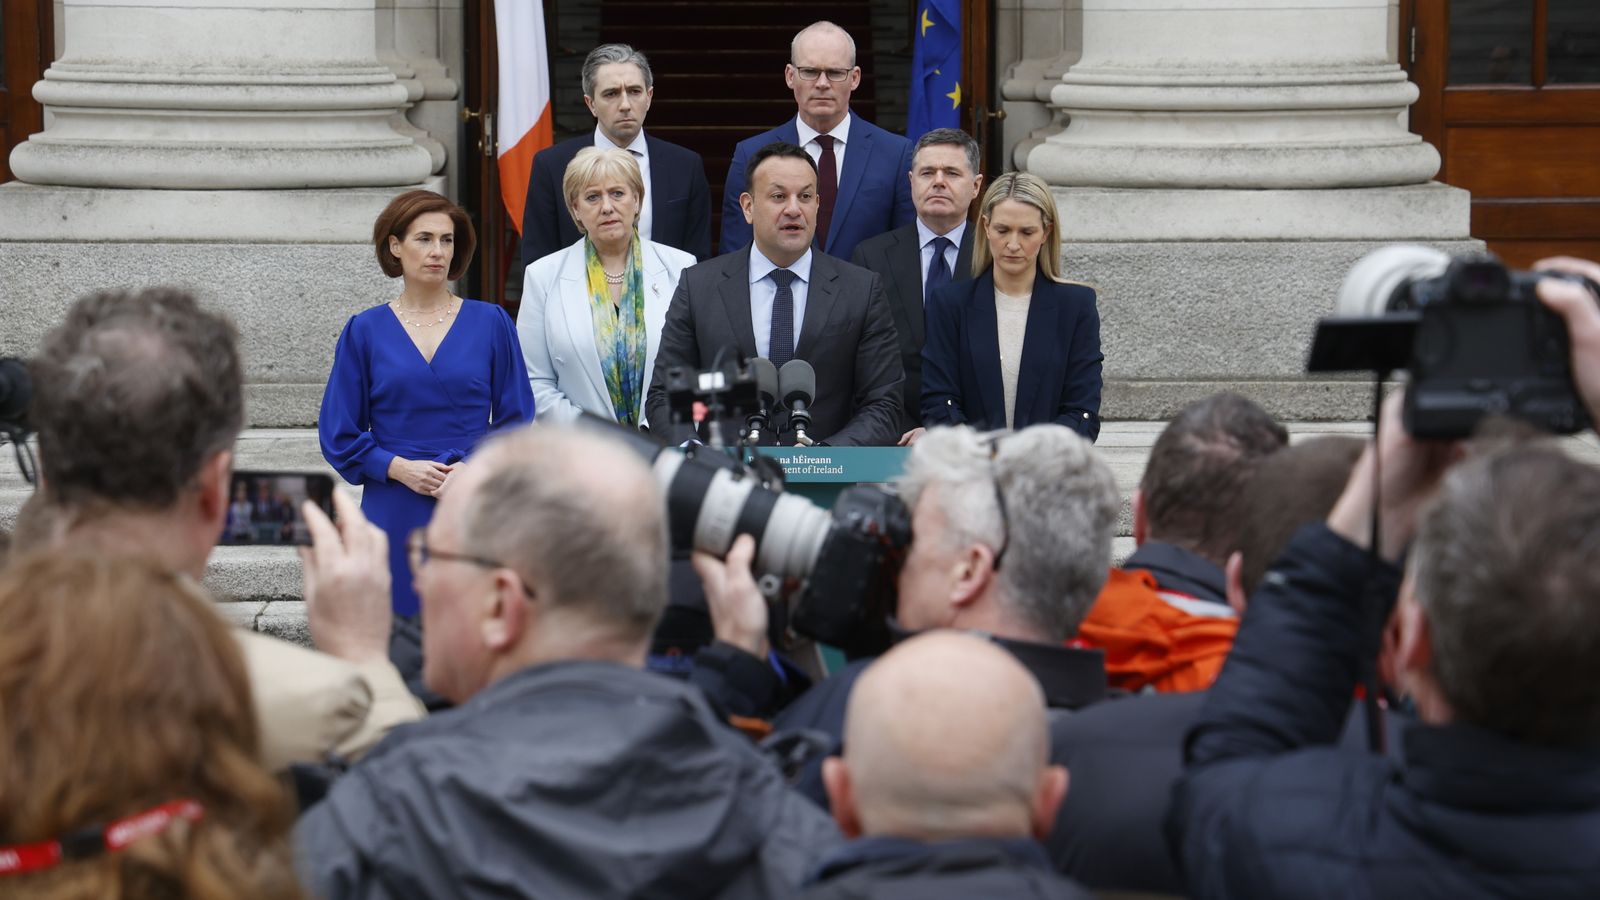 Démission de Leo Varadkar : qui pourrait être le prochain Taoiseach d’Irlande ?  |  Nouvelles du monde